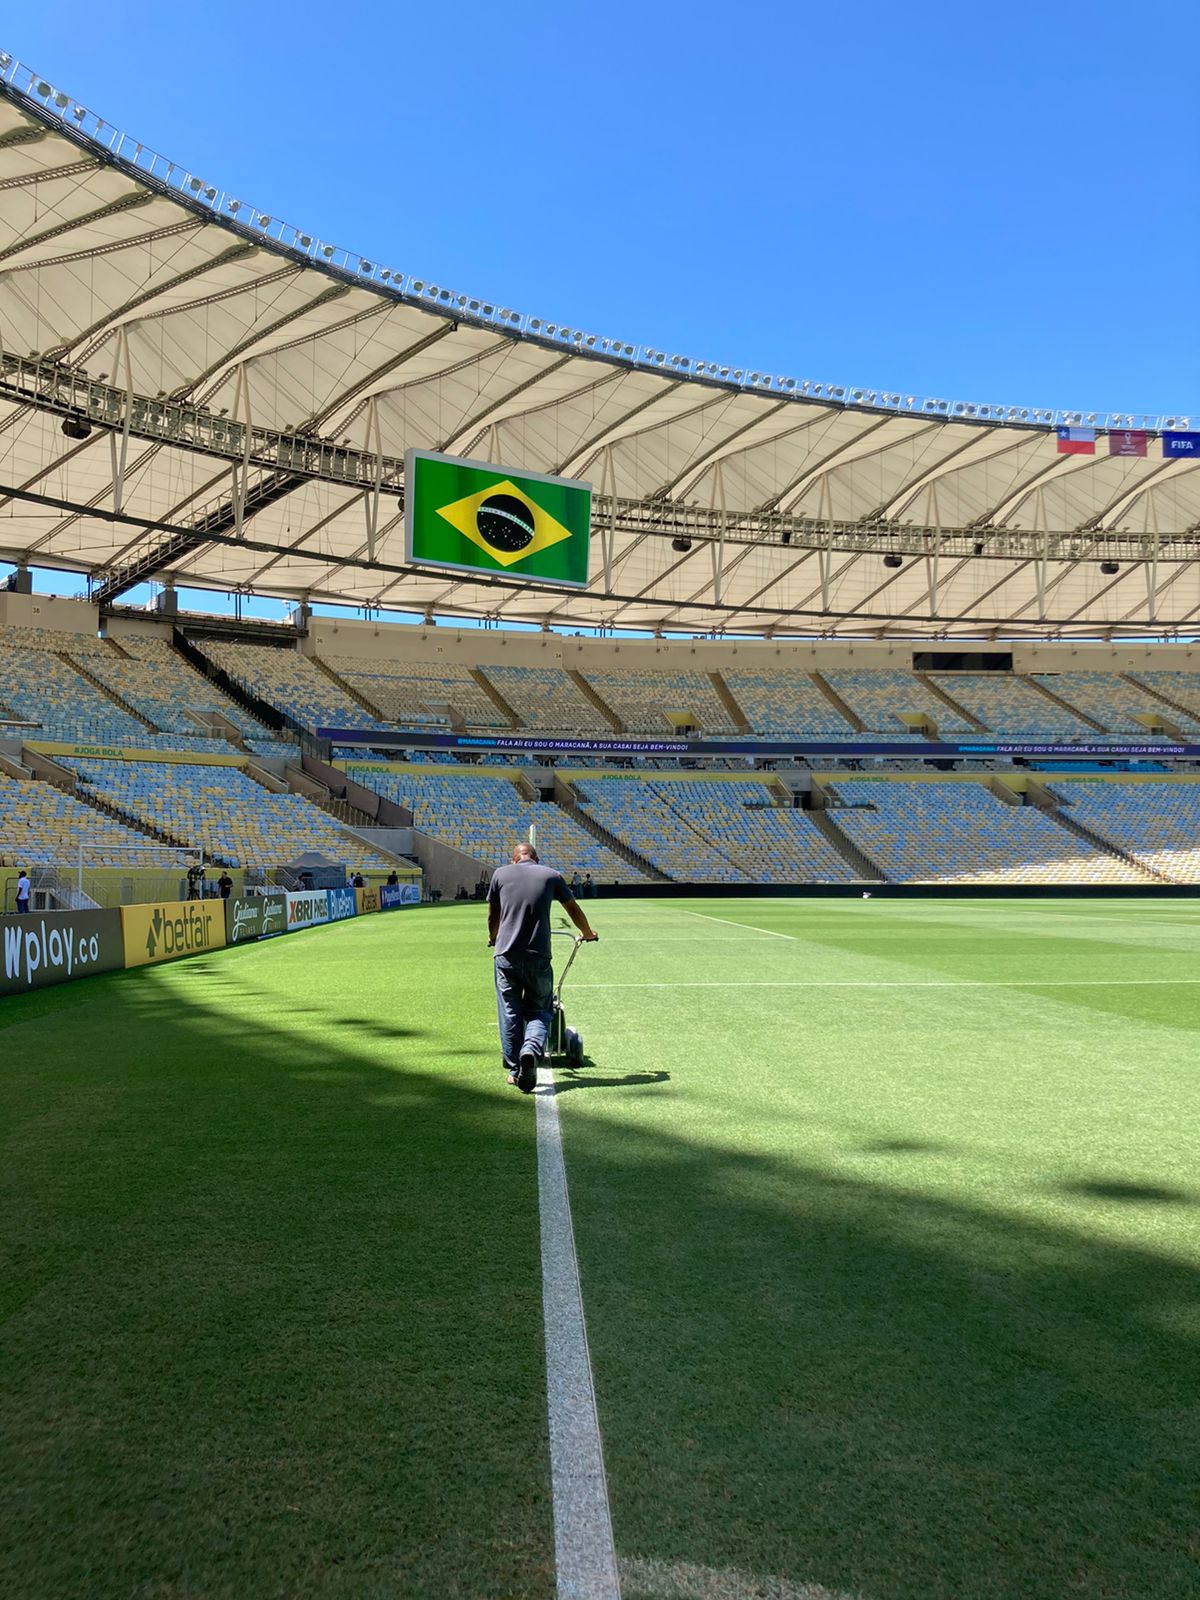 TNT Sports Brasil - HAJA CORAÇÃO, AMIGO! O Galvão não curtiu nada o  resultado do jogo da #SeleçãoBrasileira